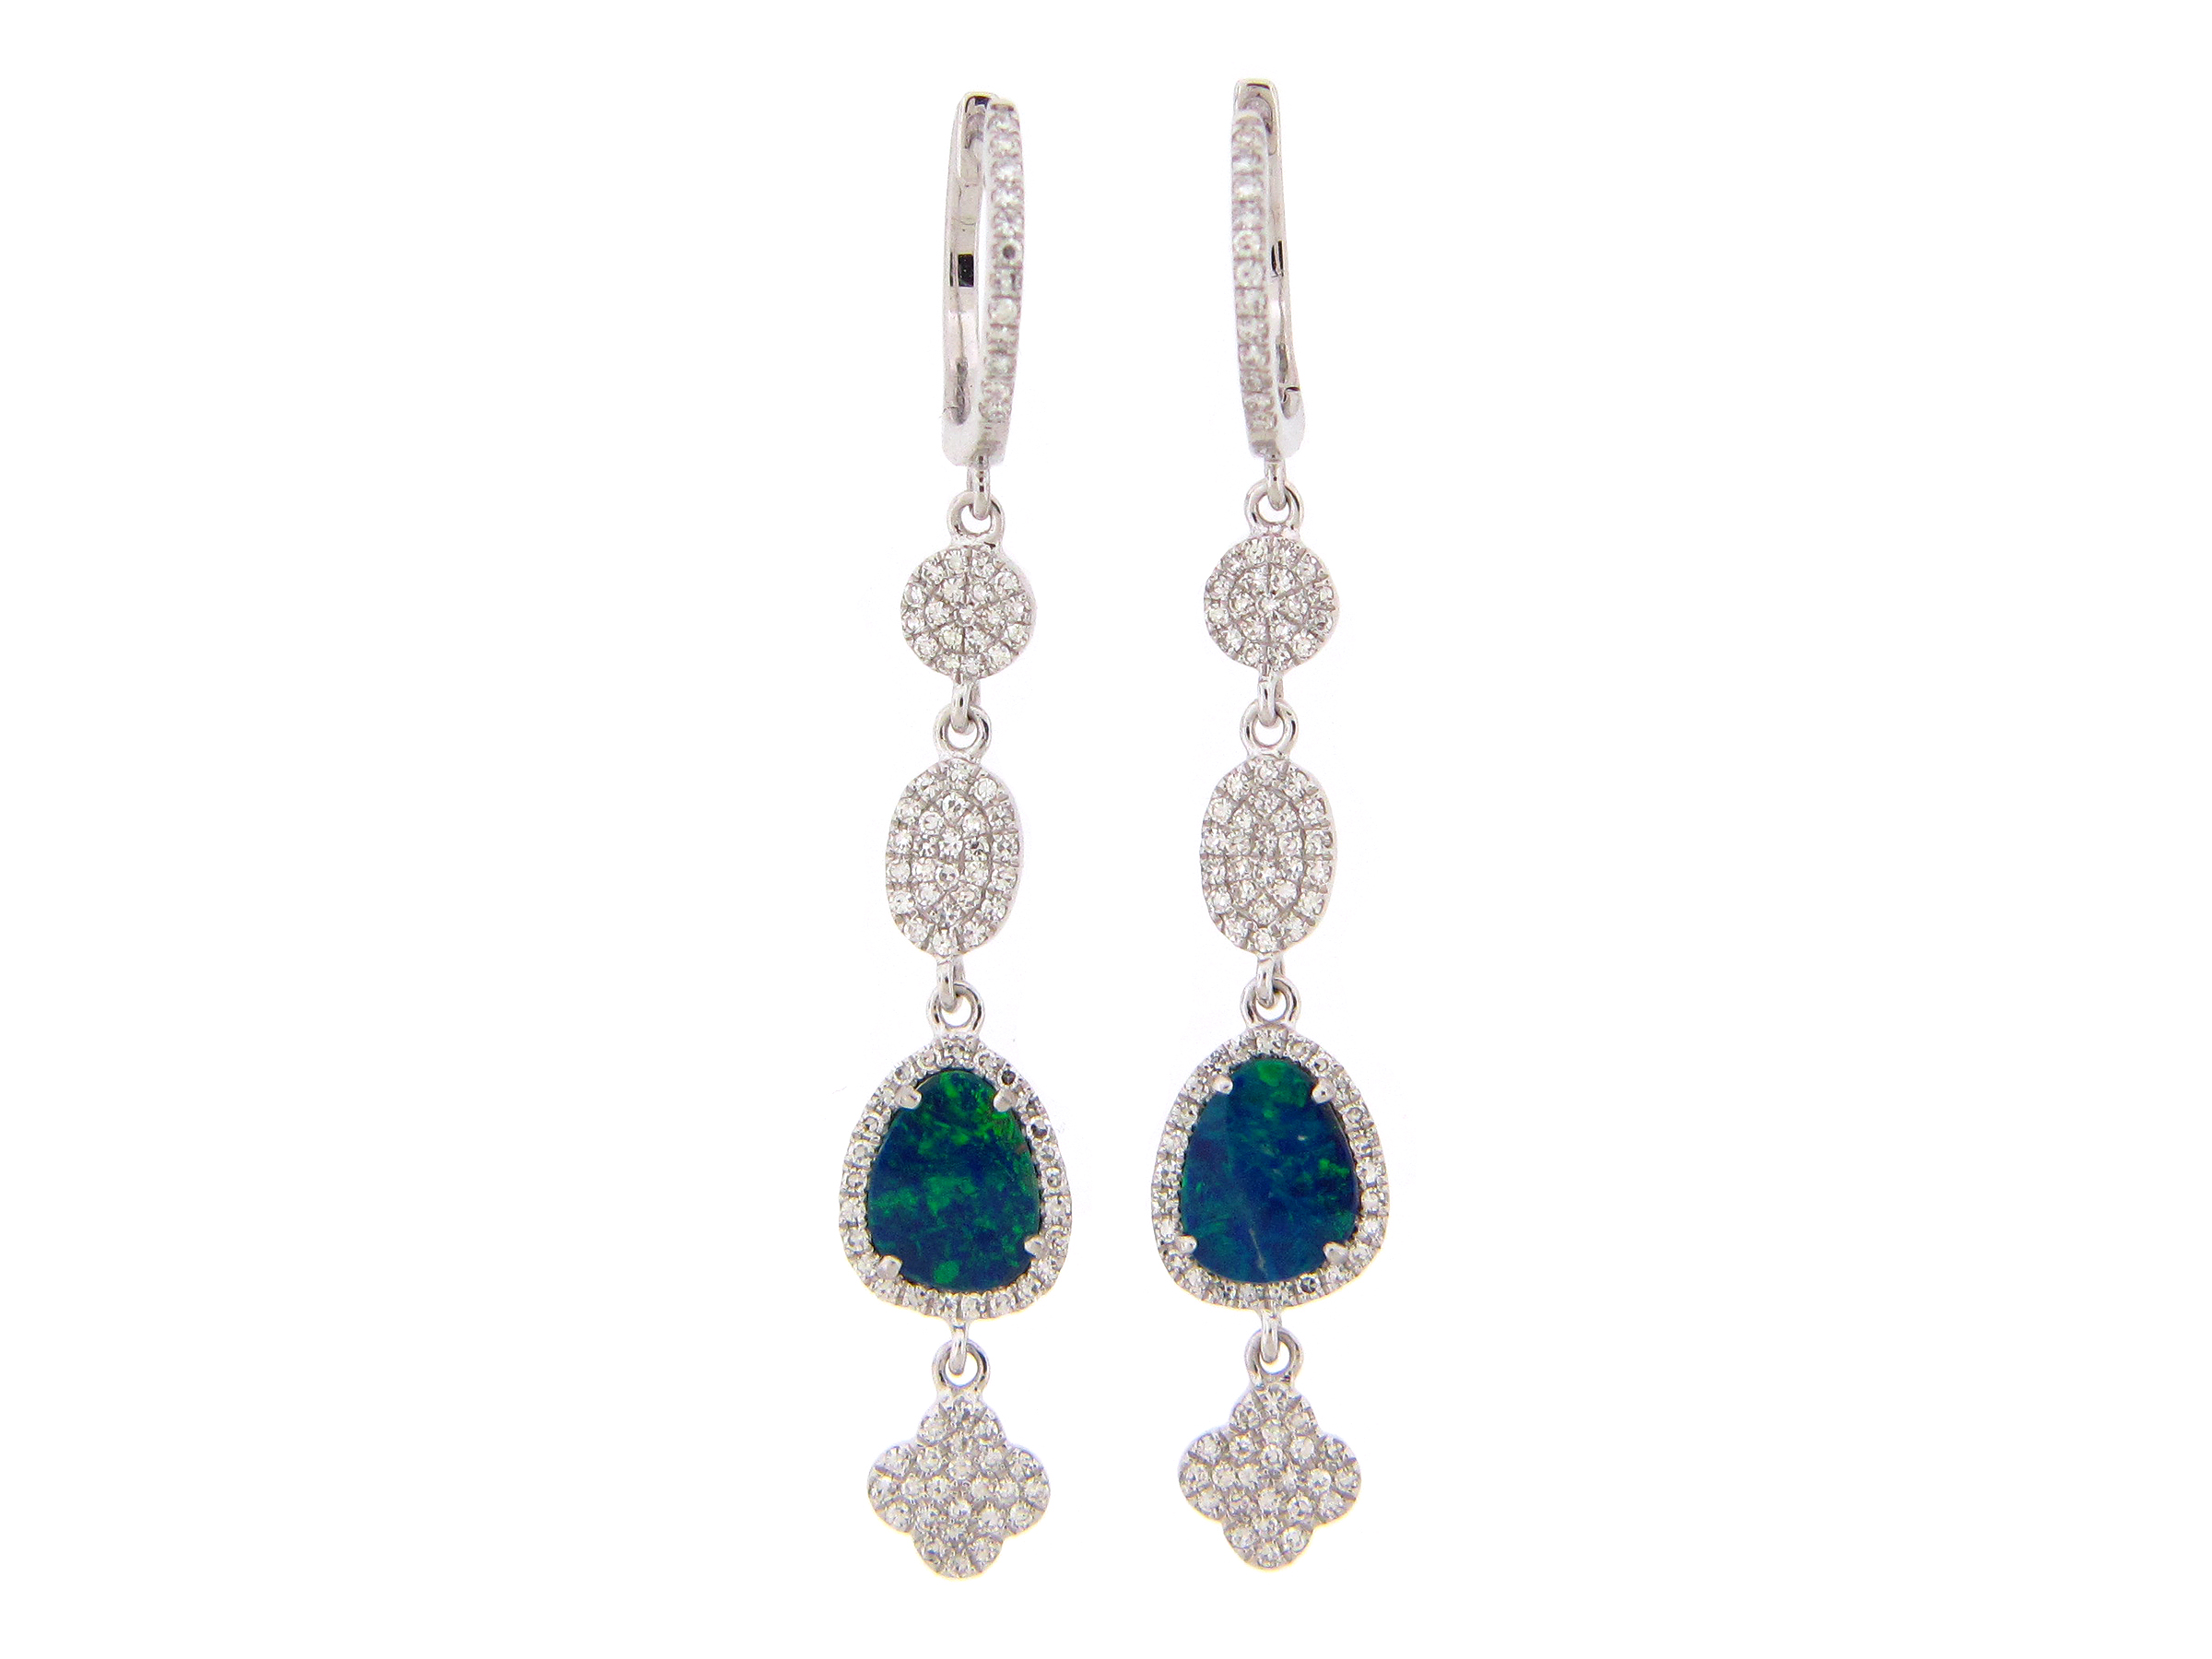 Black Opal & Diamond Earring